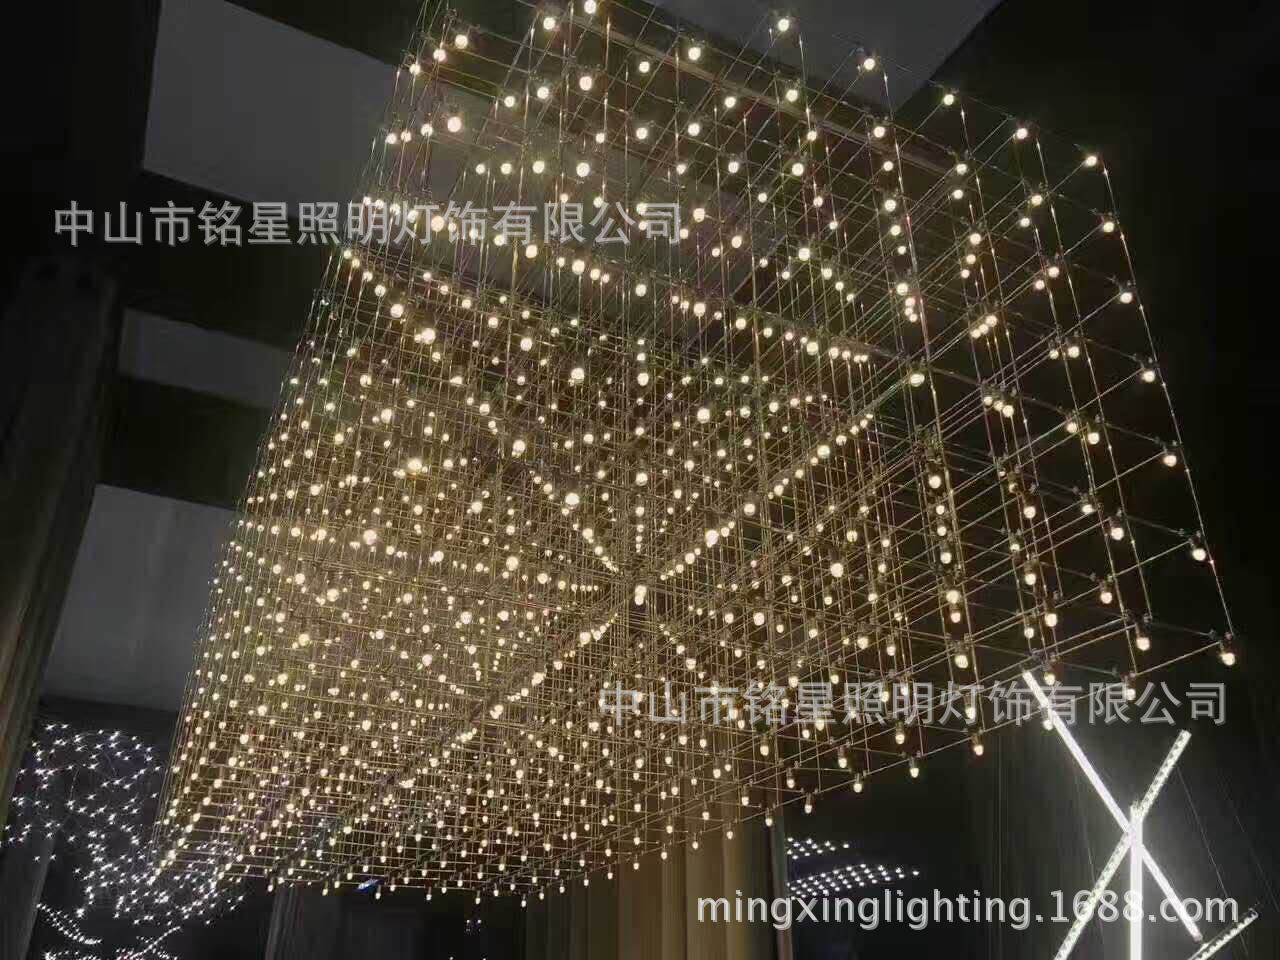 专业酒店大堂大型光立方吊灯厂家定制售楼部展厅LED光立方体灯具示例图9